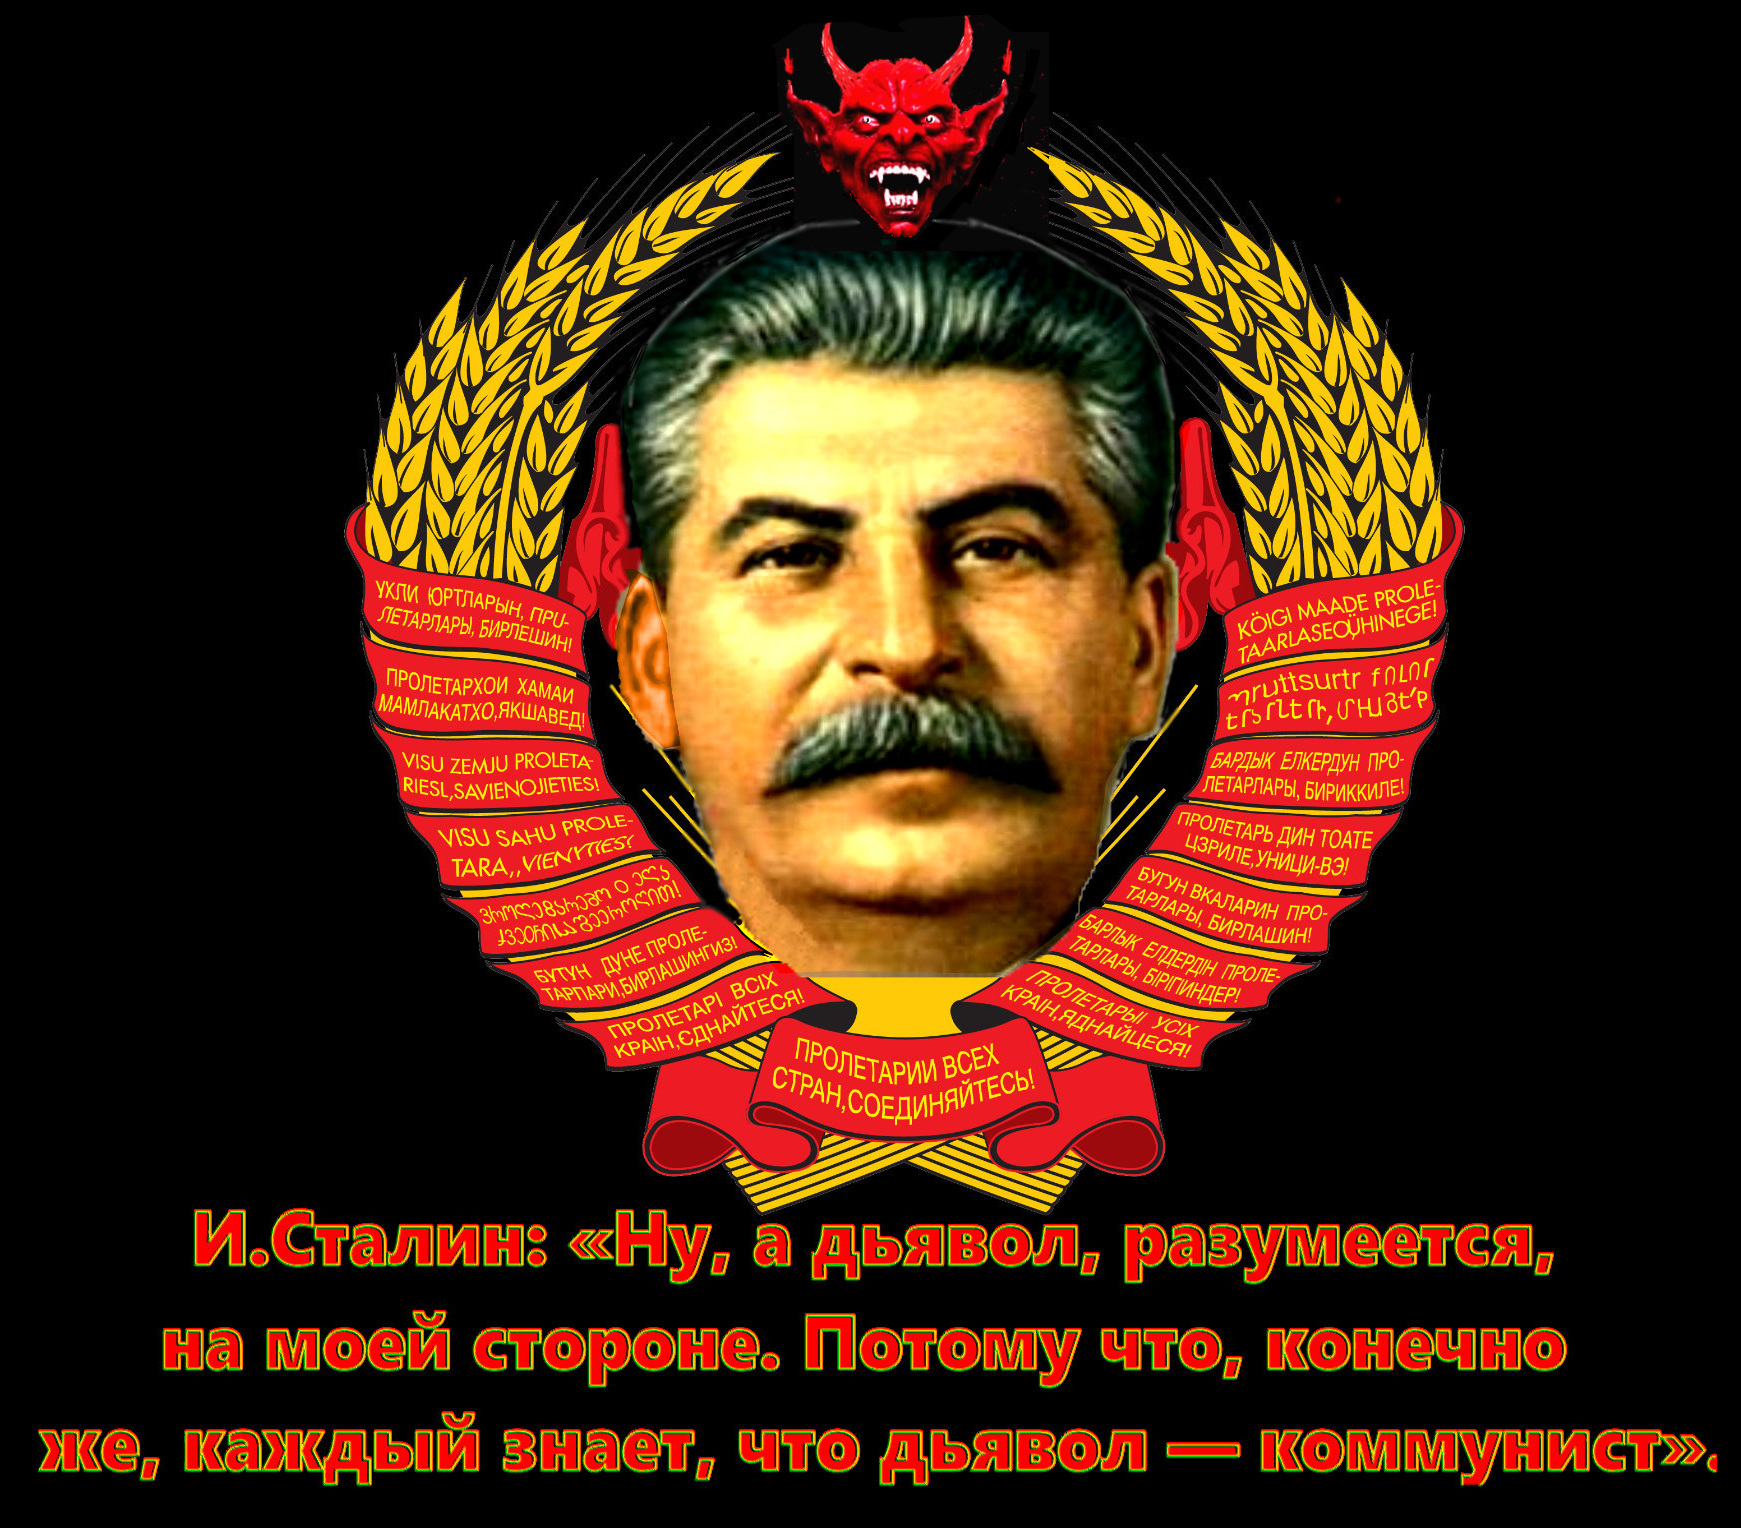 Лучшие слова сталина